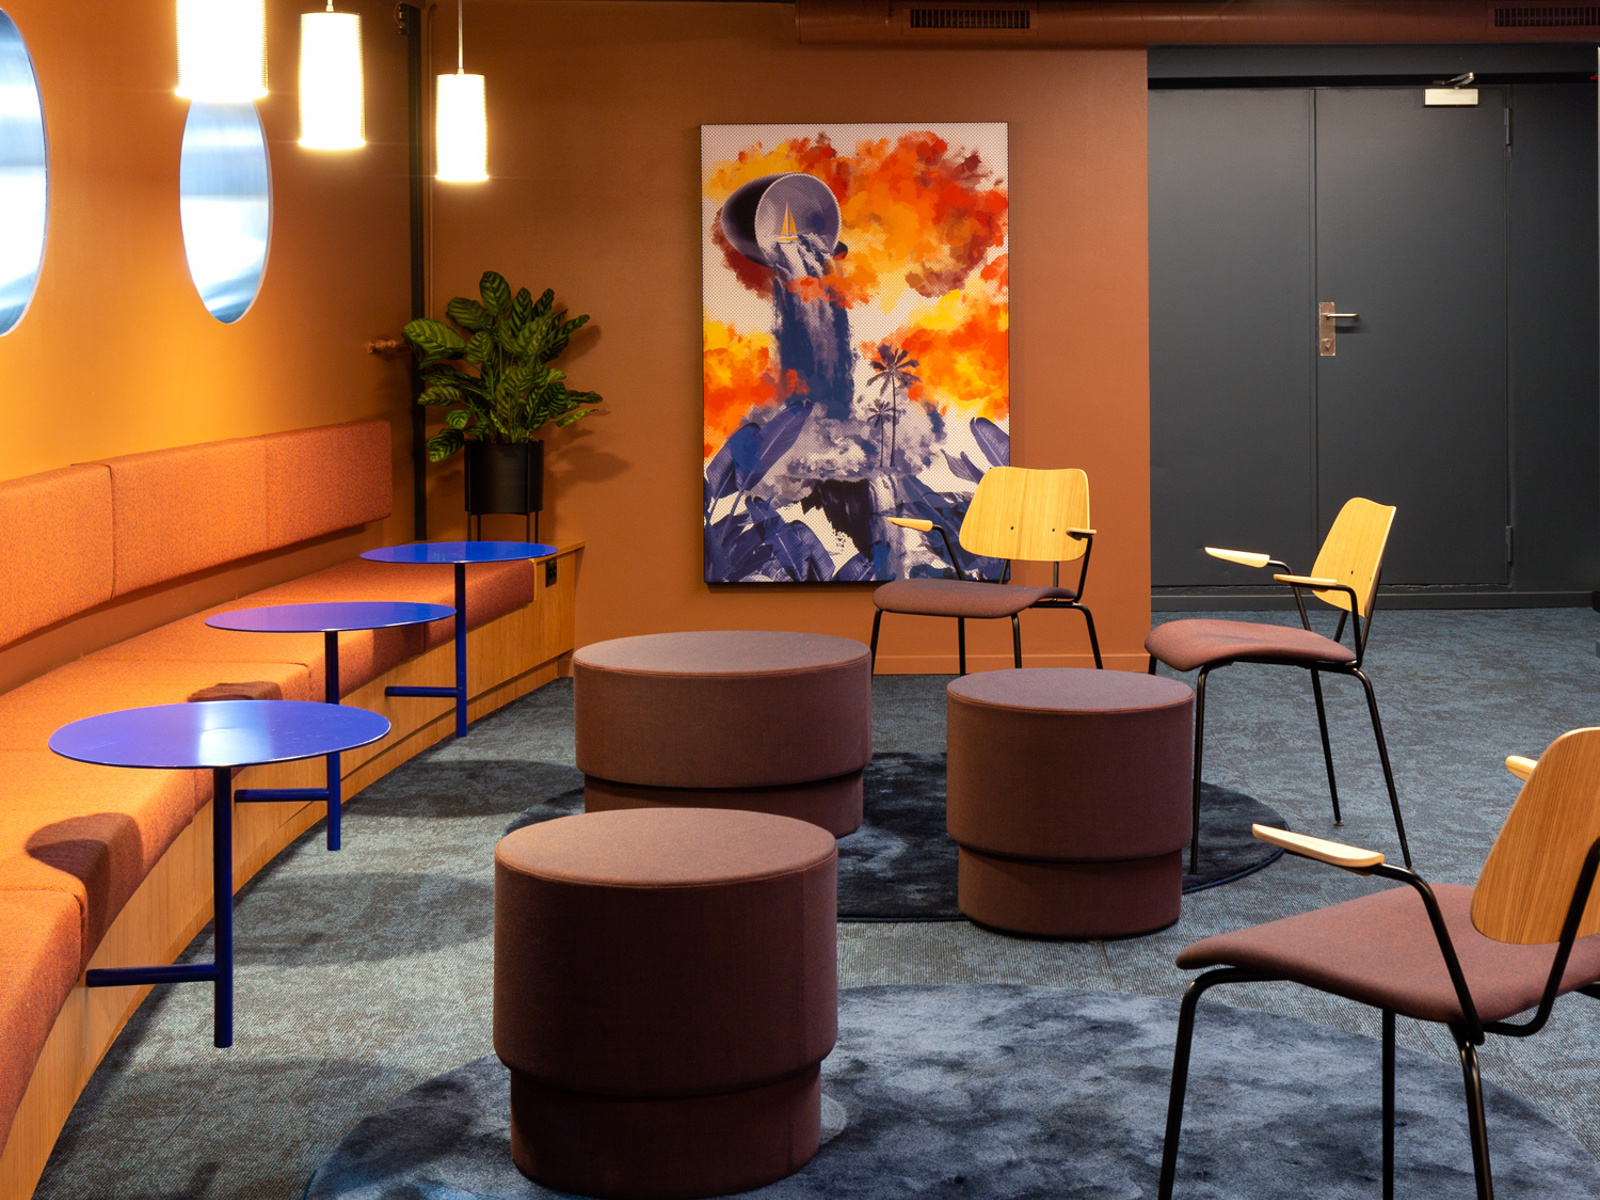 Interiør i oransje, blå og lilla toner. Sittegrupper, stoler og benk langs veggen. Foto.